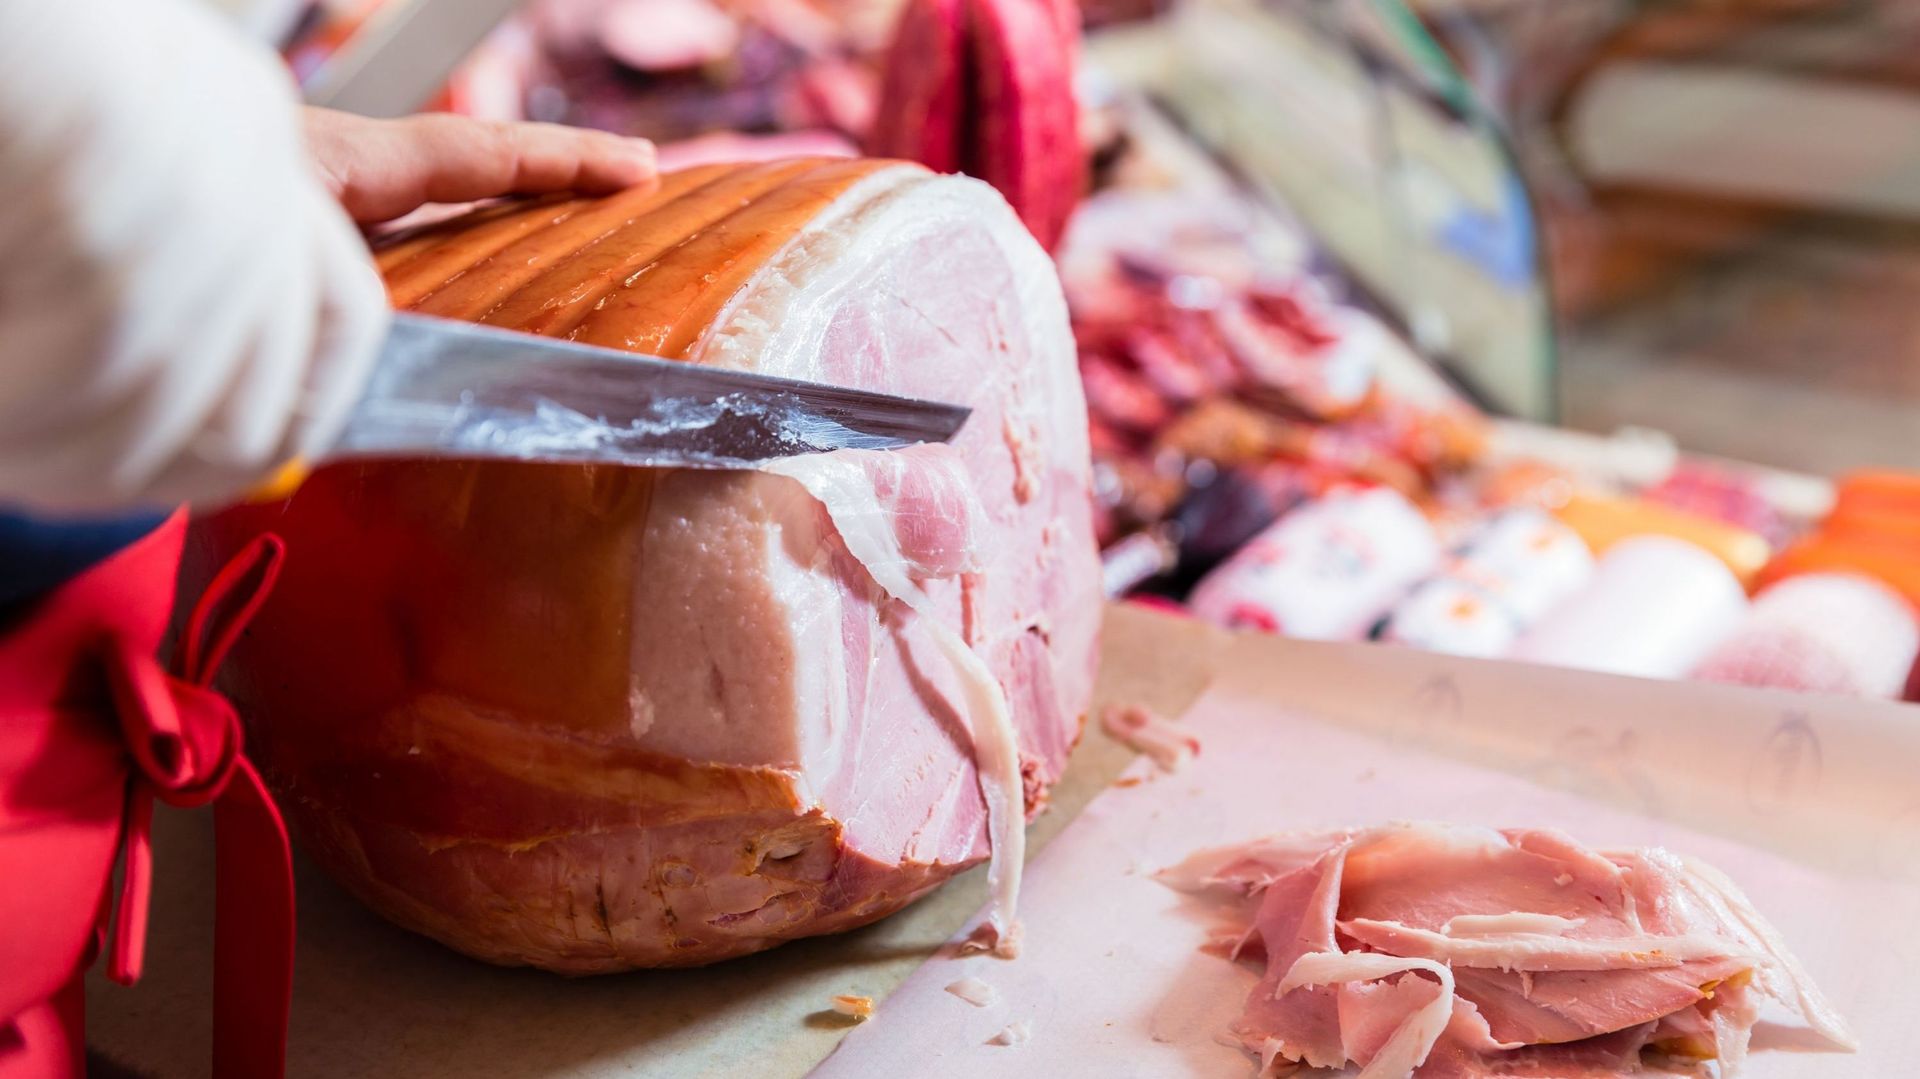 Butcher slicing roasted ham